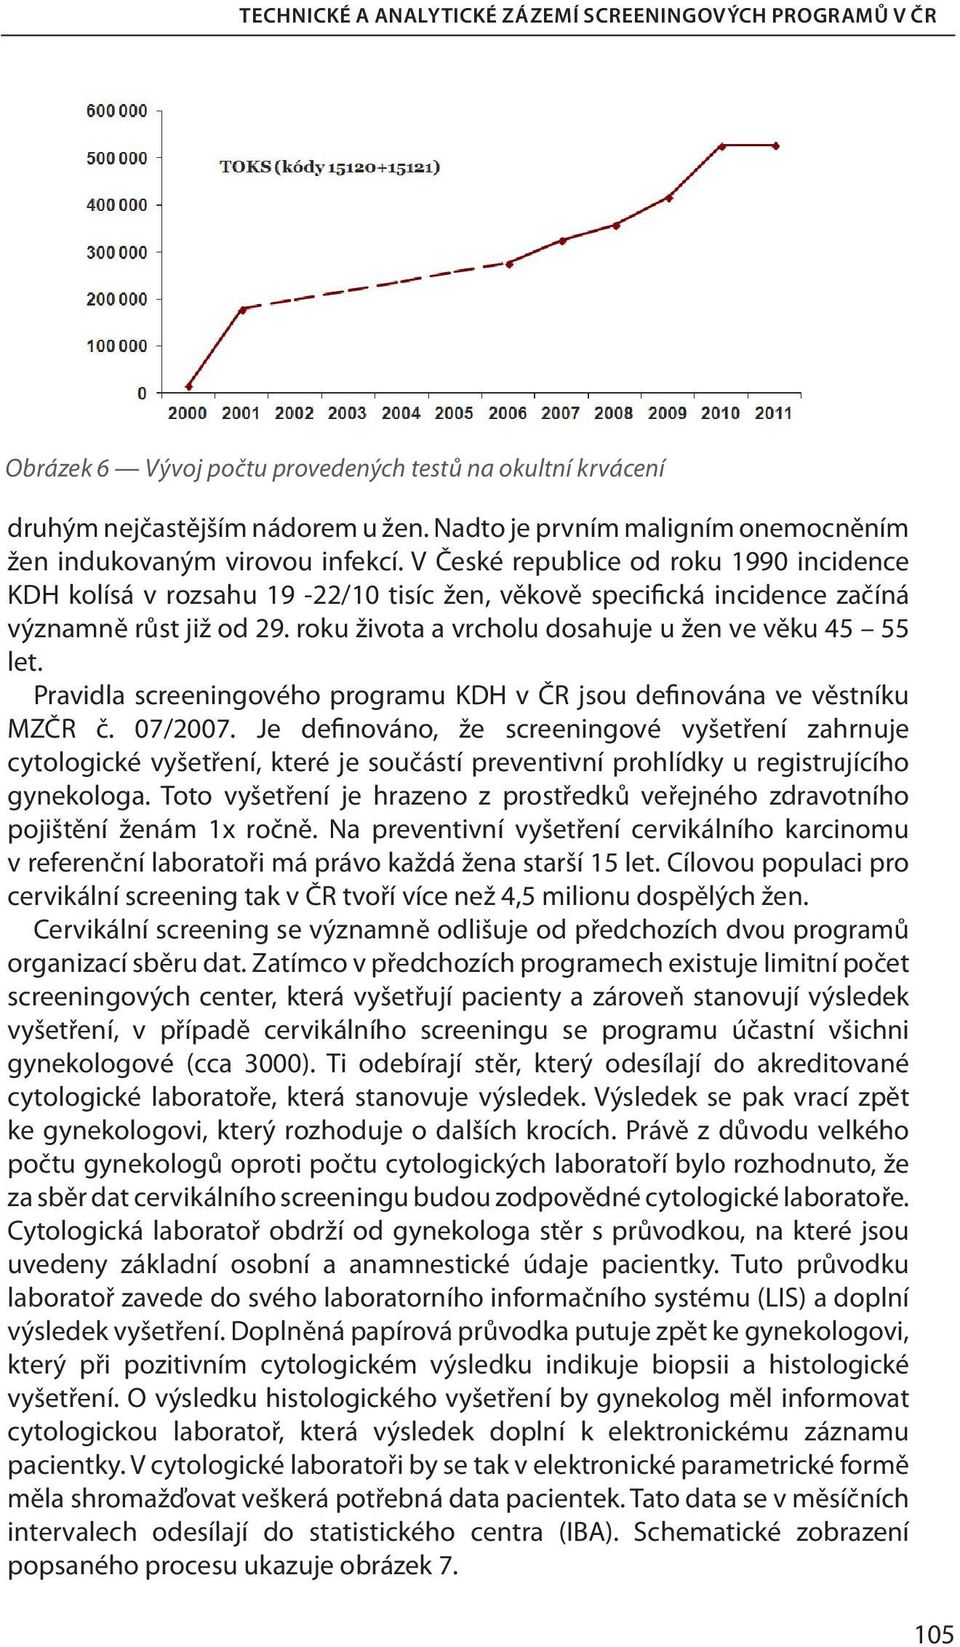 Pravidla screeningového programu KDH v ČR jsou definována ve věstníku MZČR č. 07/2007.